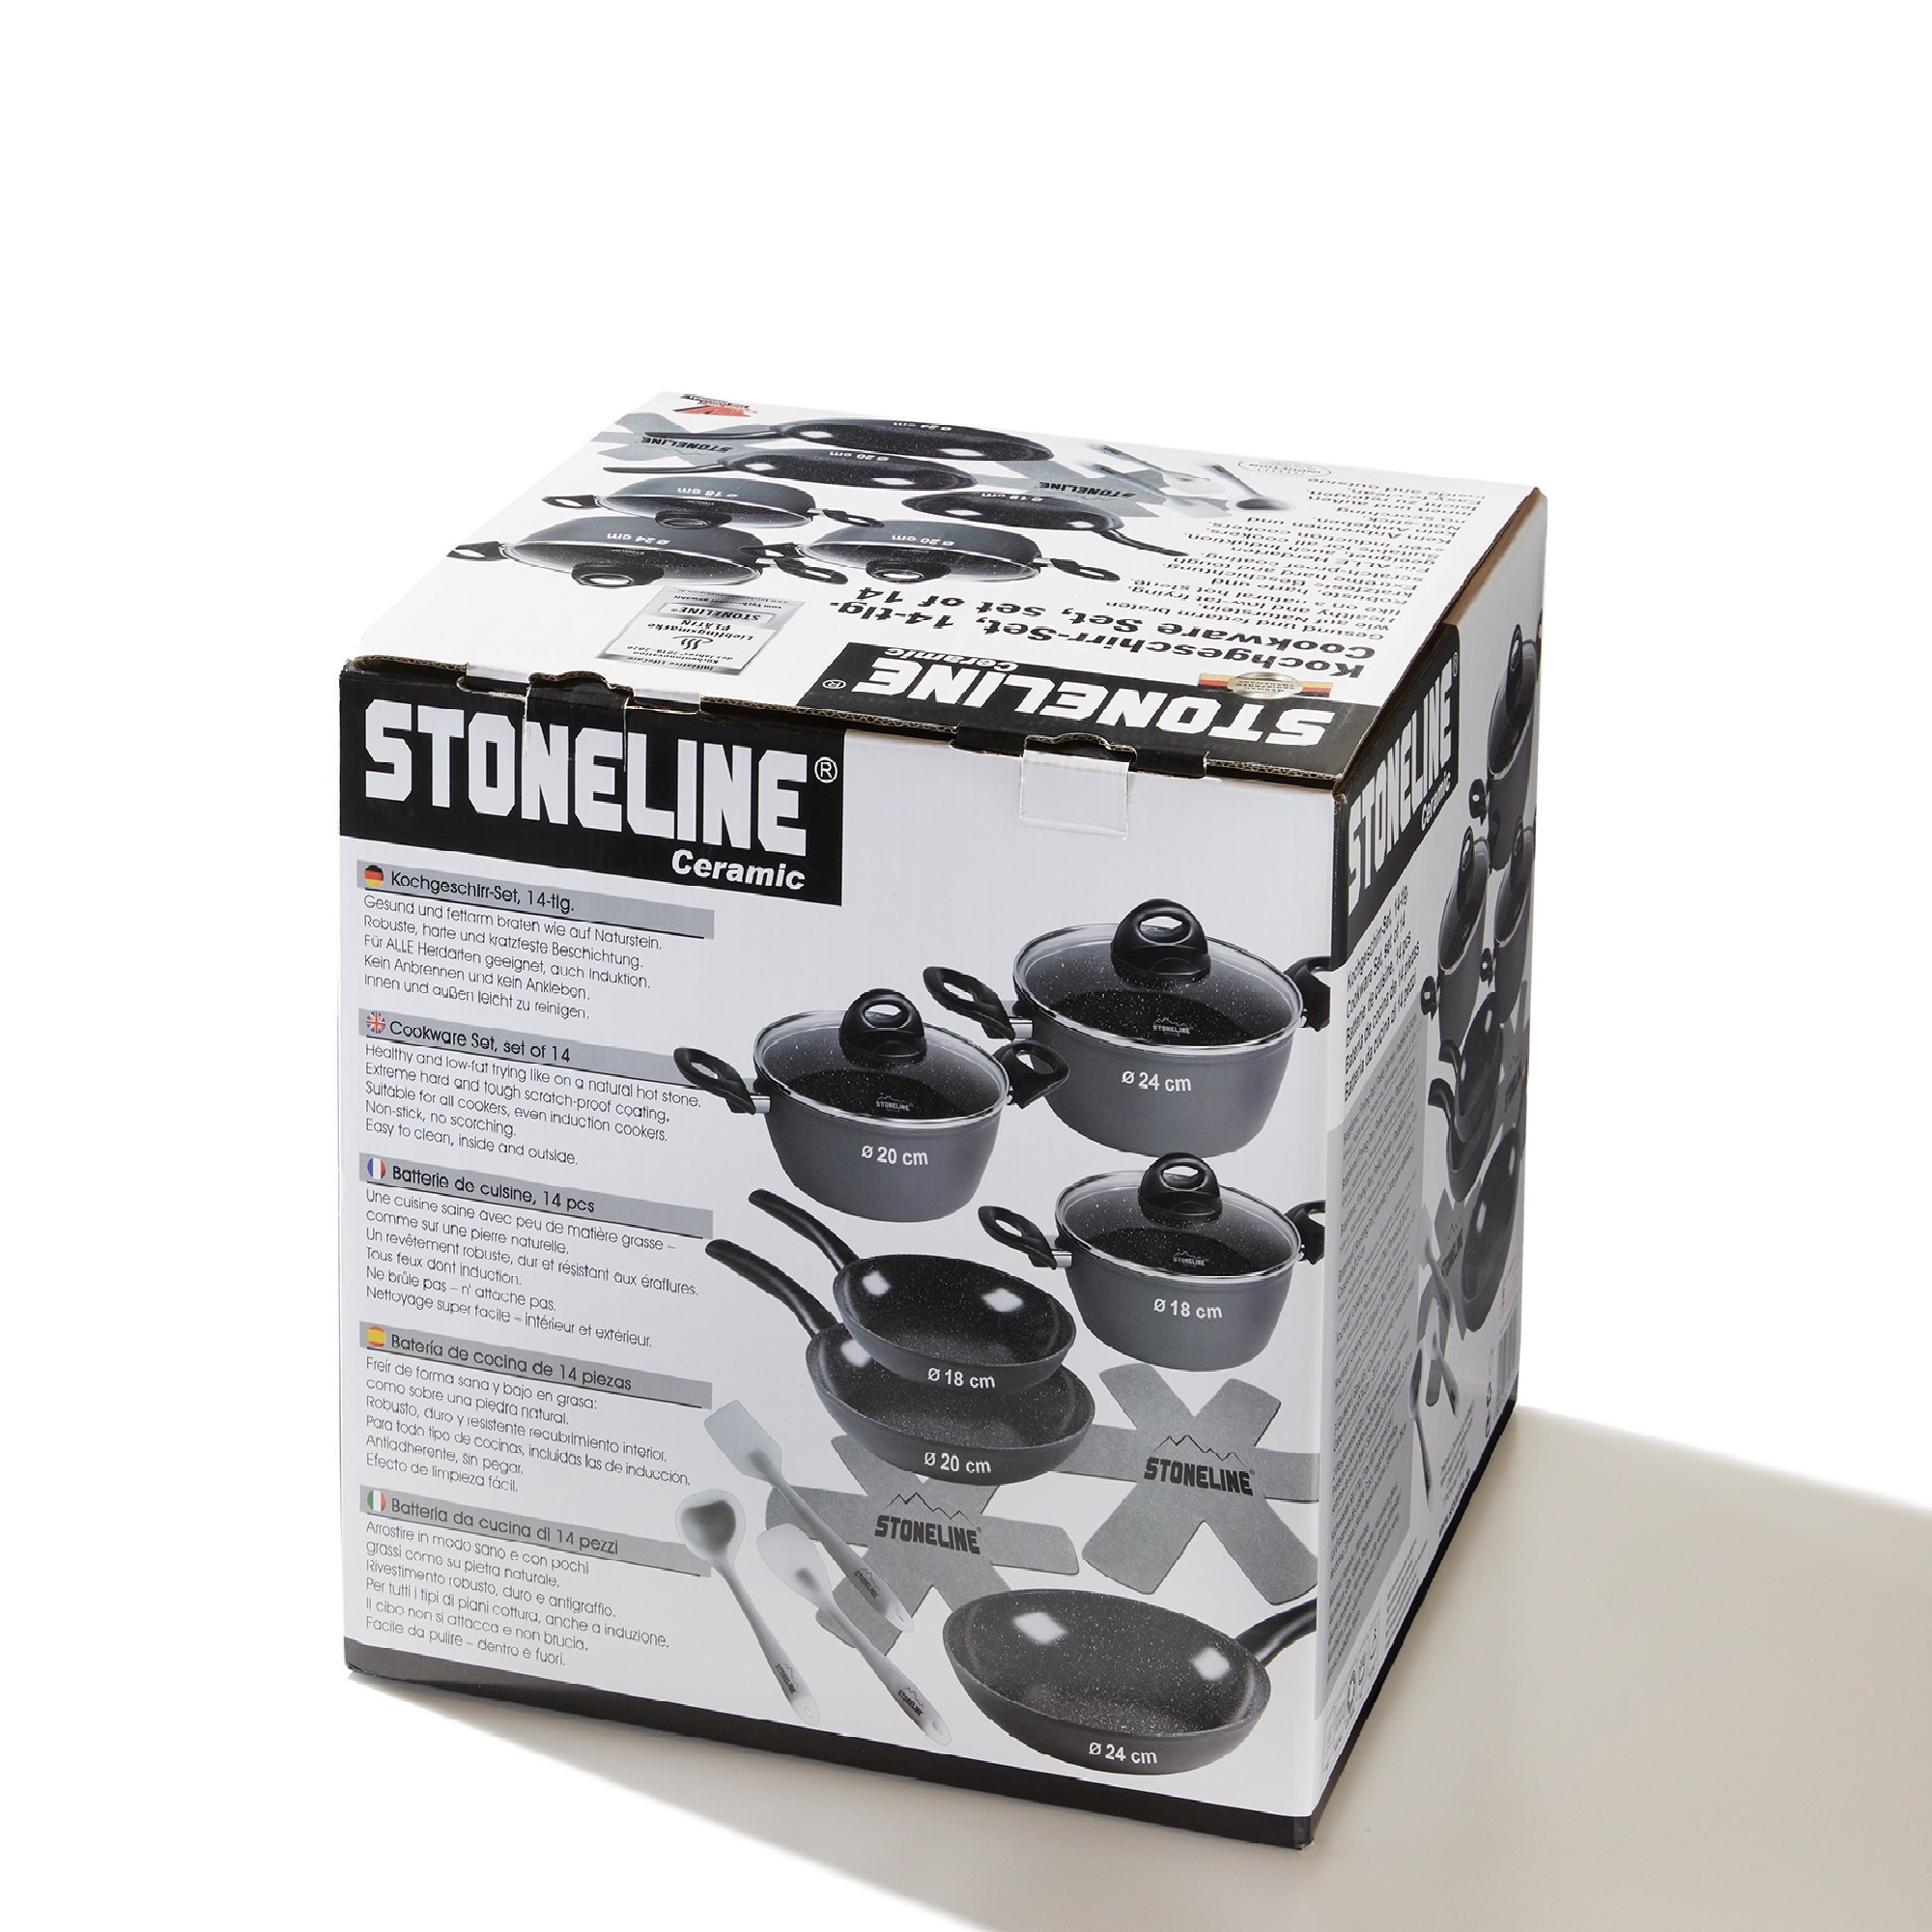 STONELINE® CERAMIC batería de cocina, 14 piezas, revestimiento cerámico, con tapas de cristal, inducción